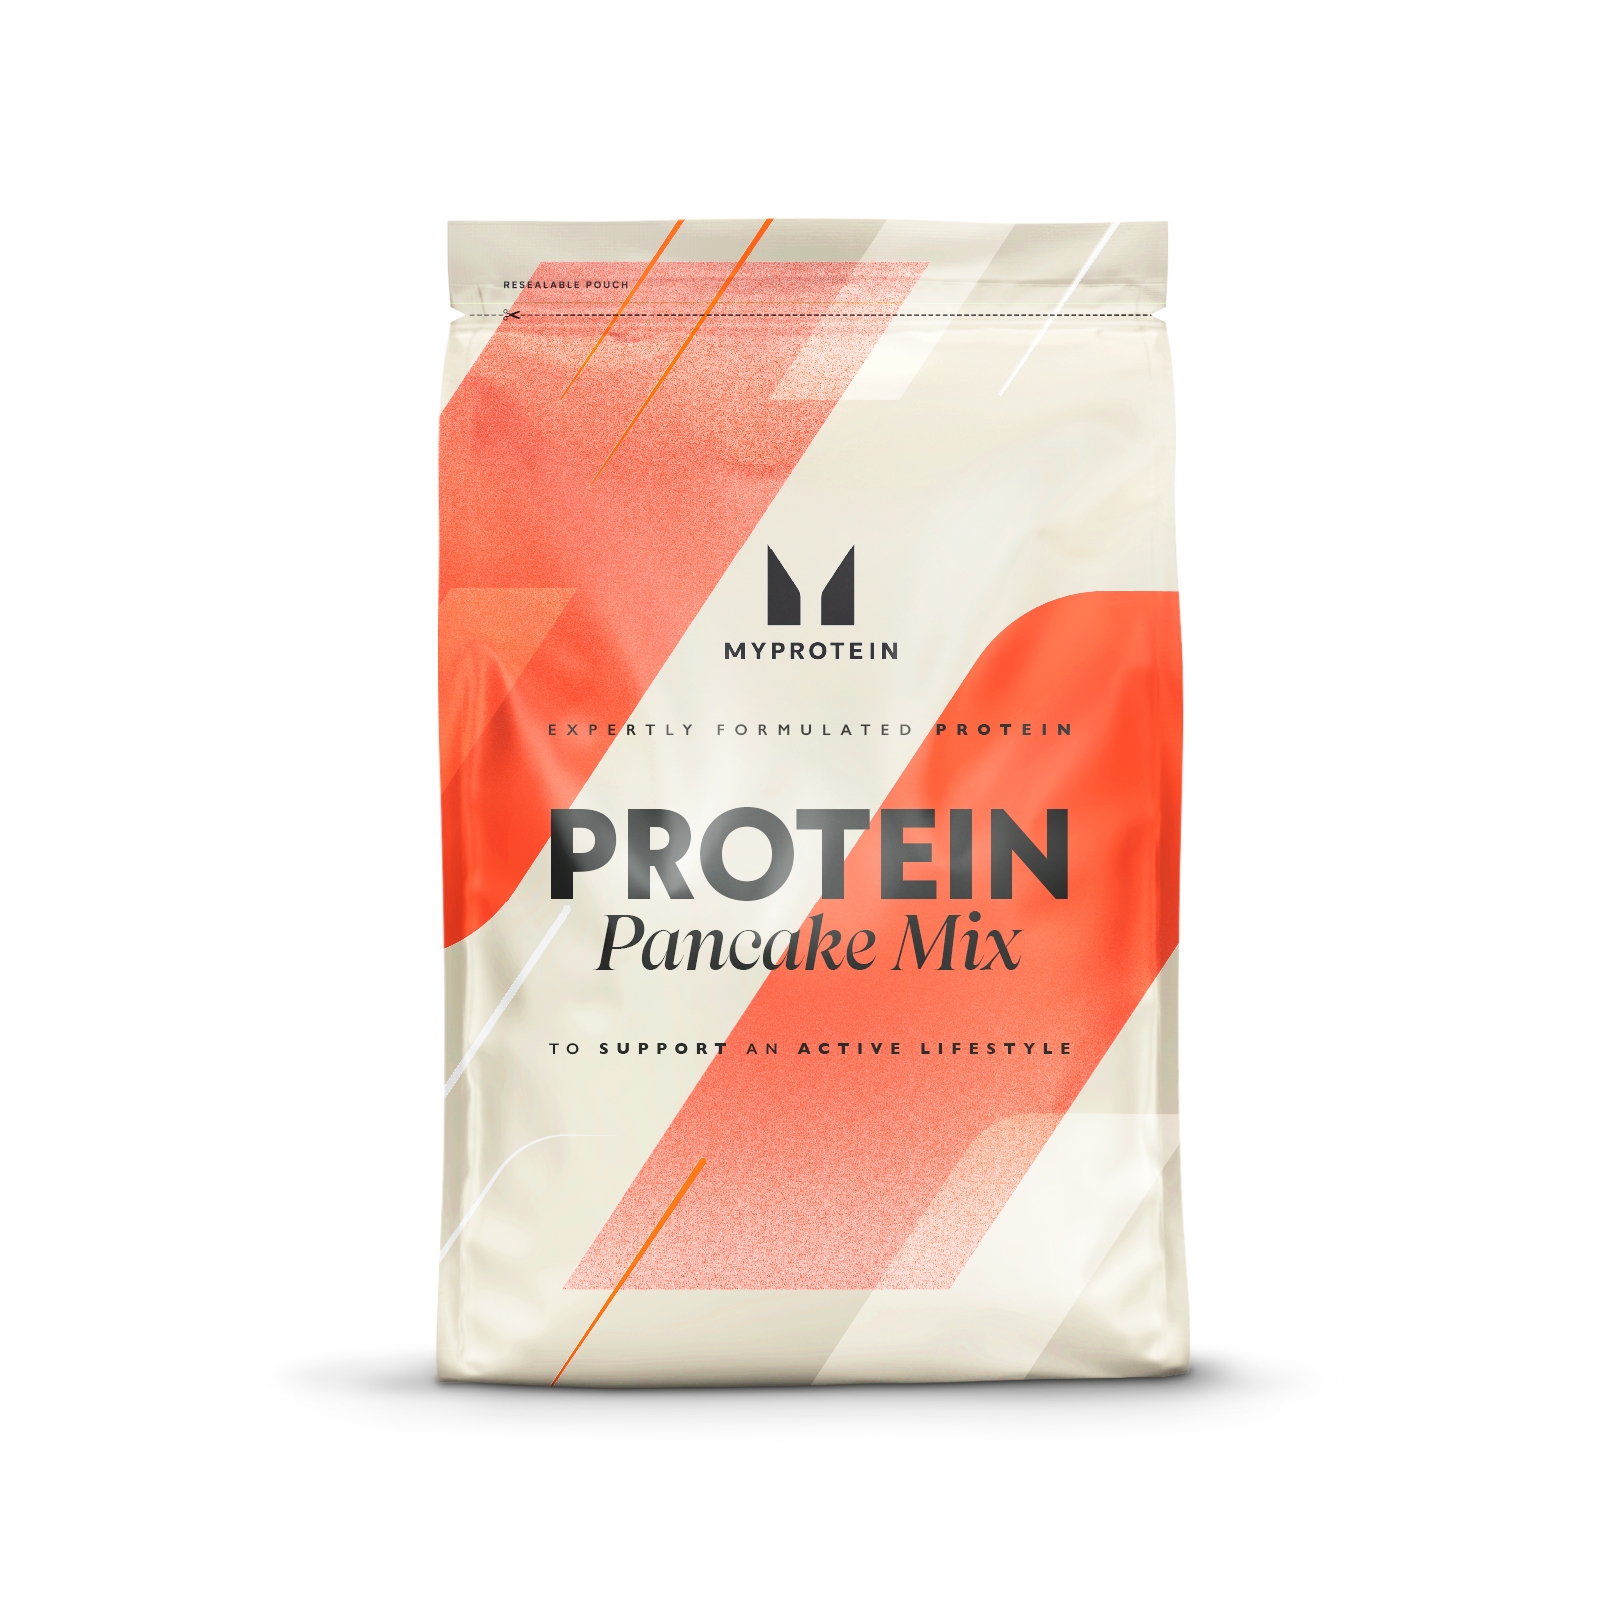 myprotein protein pancake mix - 1kg - cookies & cream